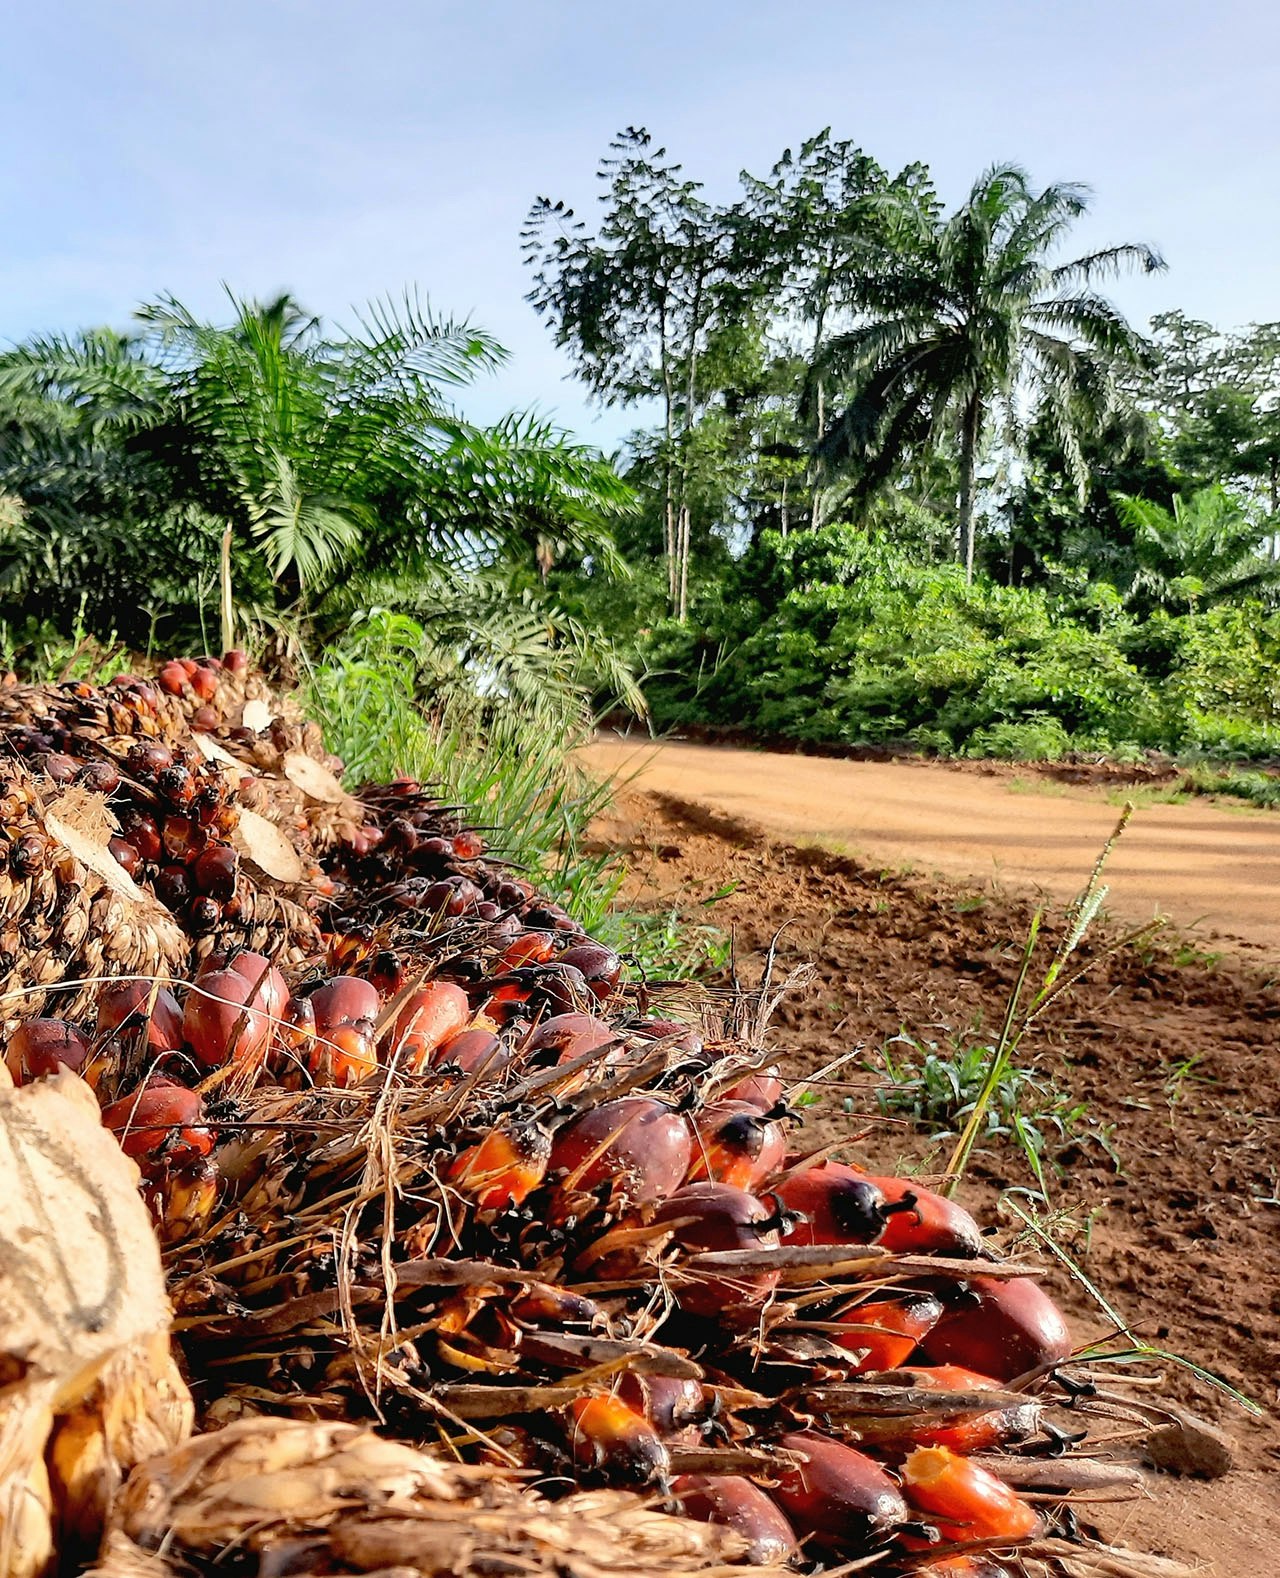 Pas geoogste palmolievruchten liggen langs de kant van de weg te wachten tot ze worden opgehaald. De vruchten worden met vrachtwagens naar de verwerkingsfabriek gebracht, waar de olie uit de vruchten wordt gehaald.